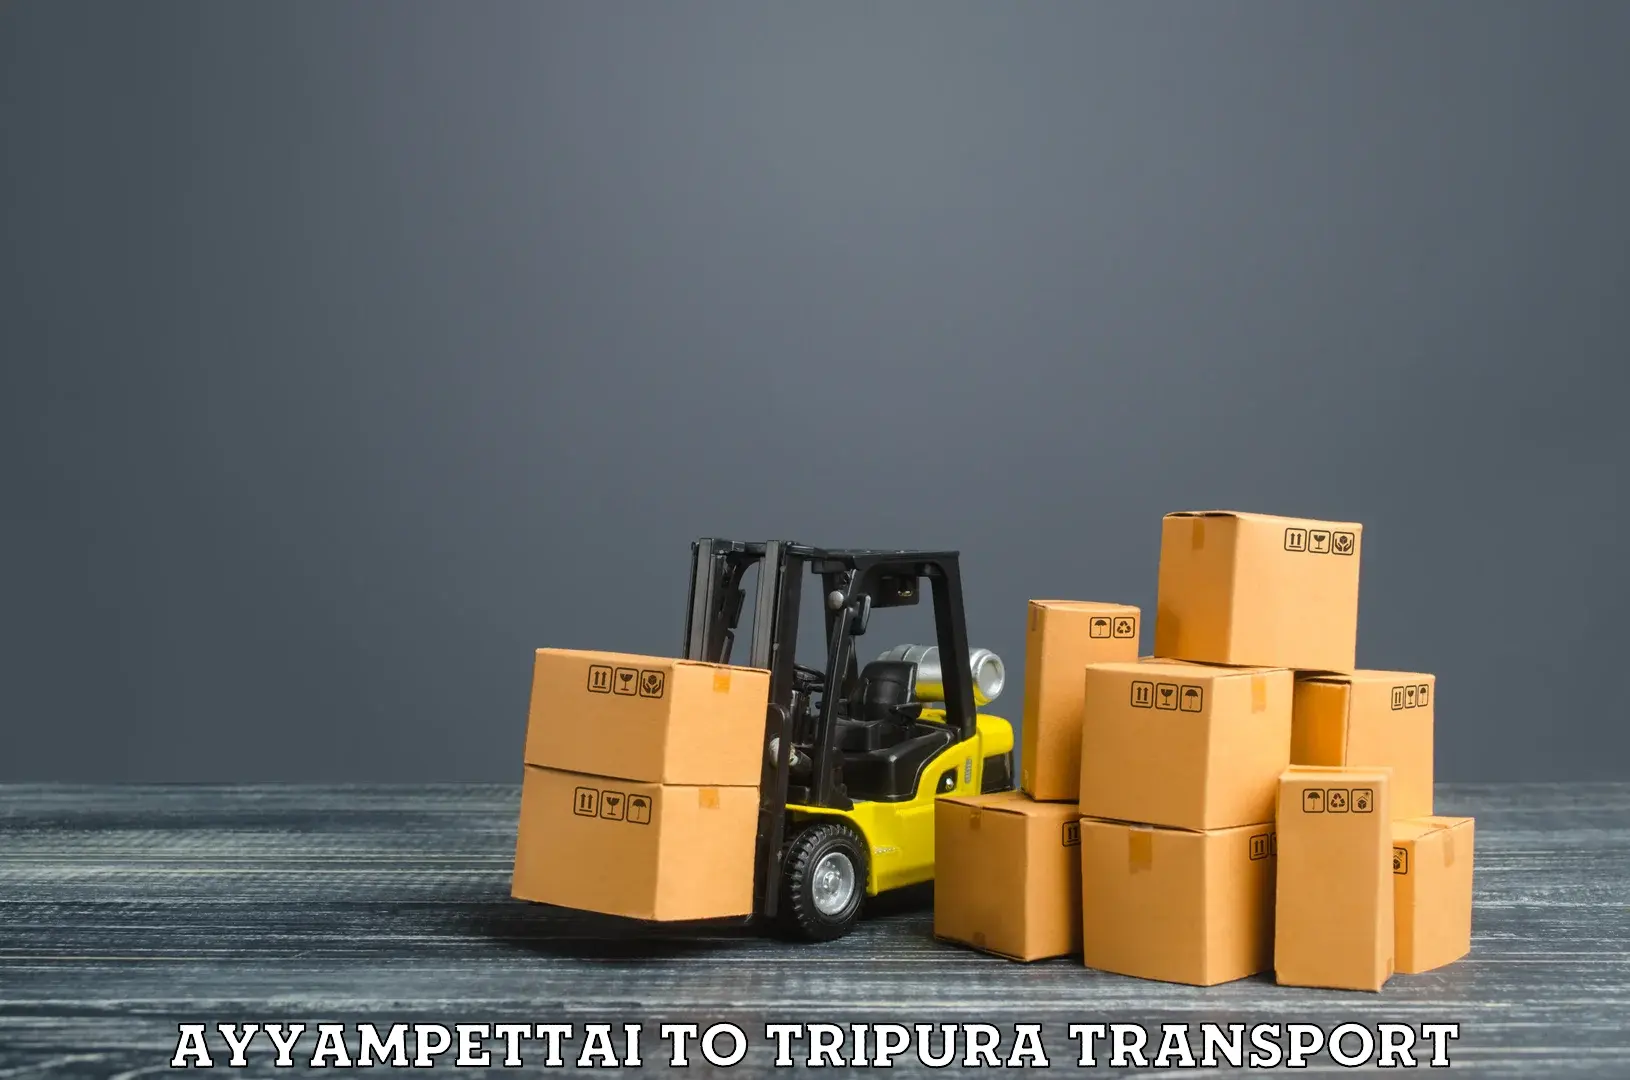 Transportation solution services Ayyampettai to IIIT Agartala